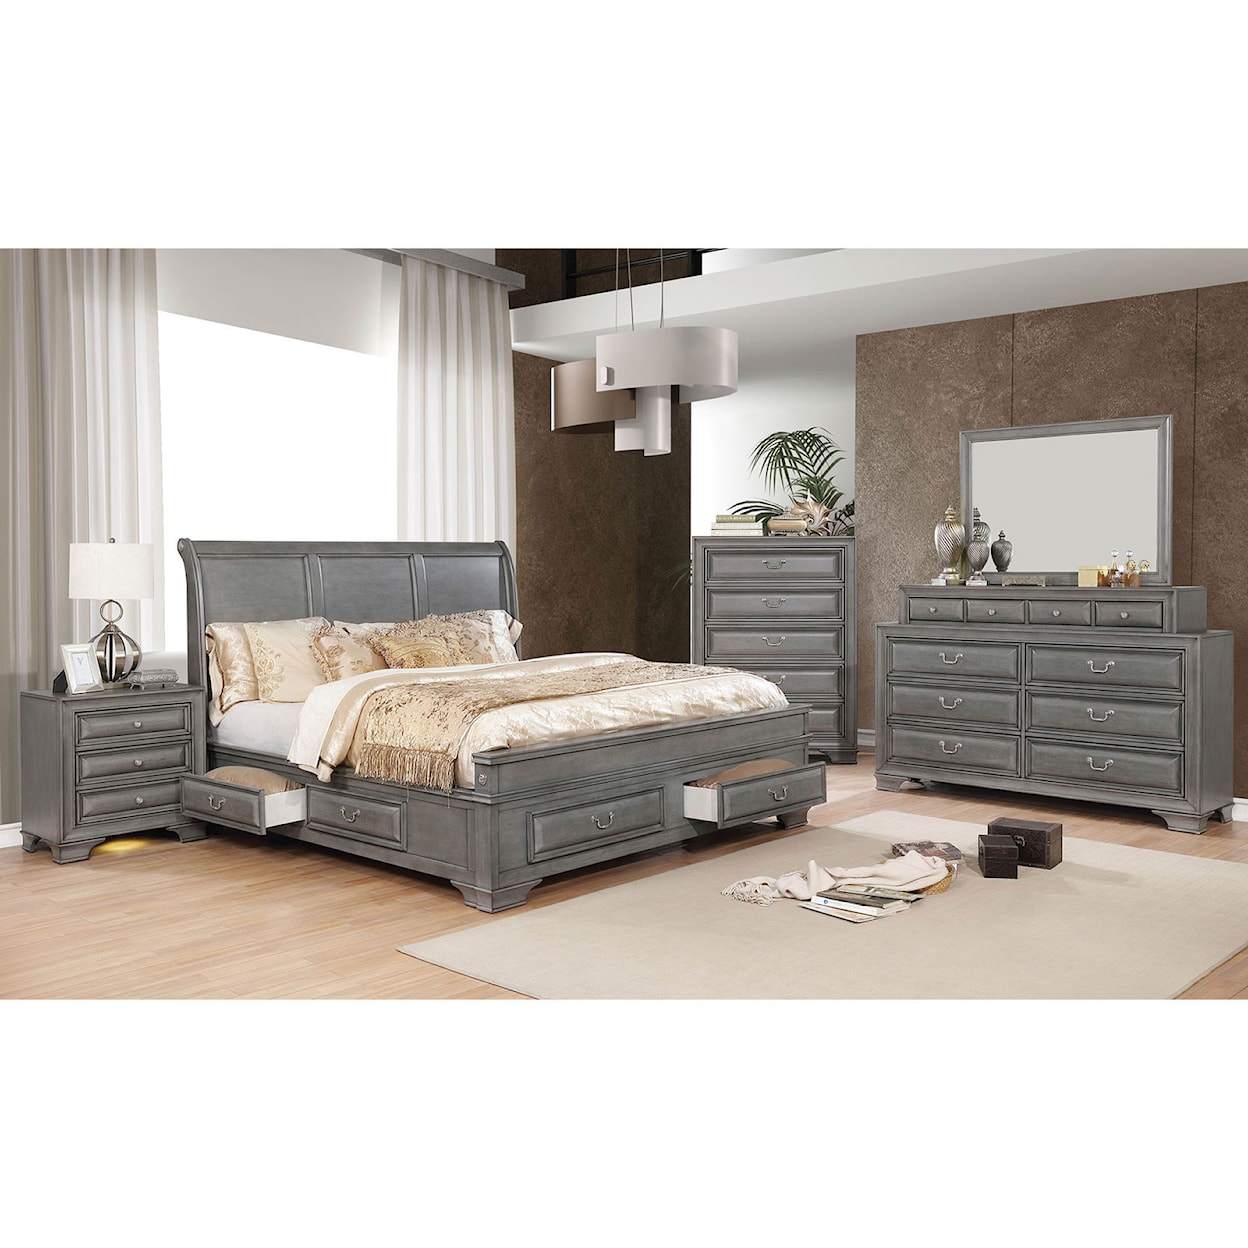 Furniture of America Brandt 4-Piece Queen Bedroom Set